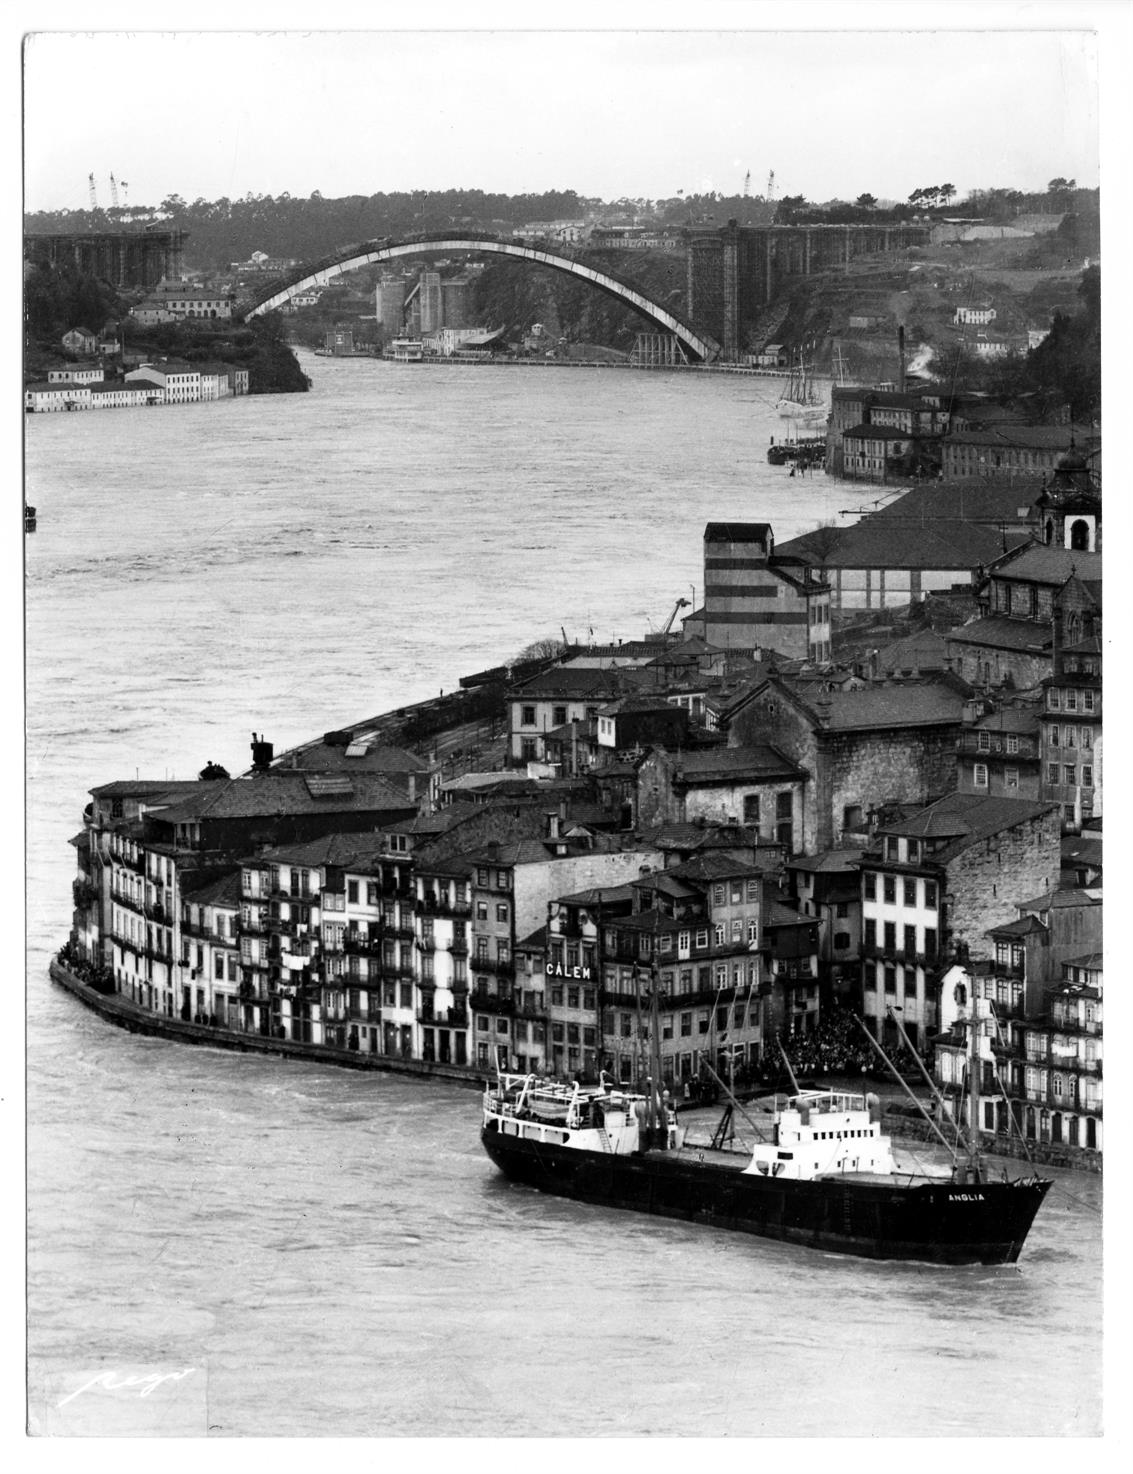 Porto - Gaia : as travessias do Rio Douro : construção da Ponte da Arrábida, durante a cheia de 1962